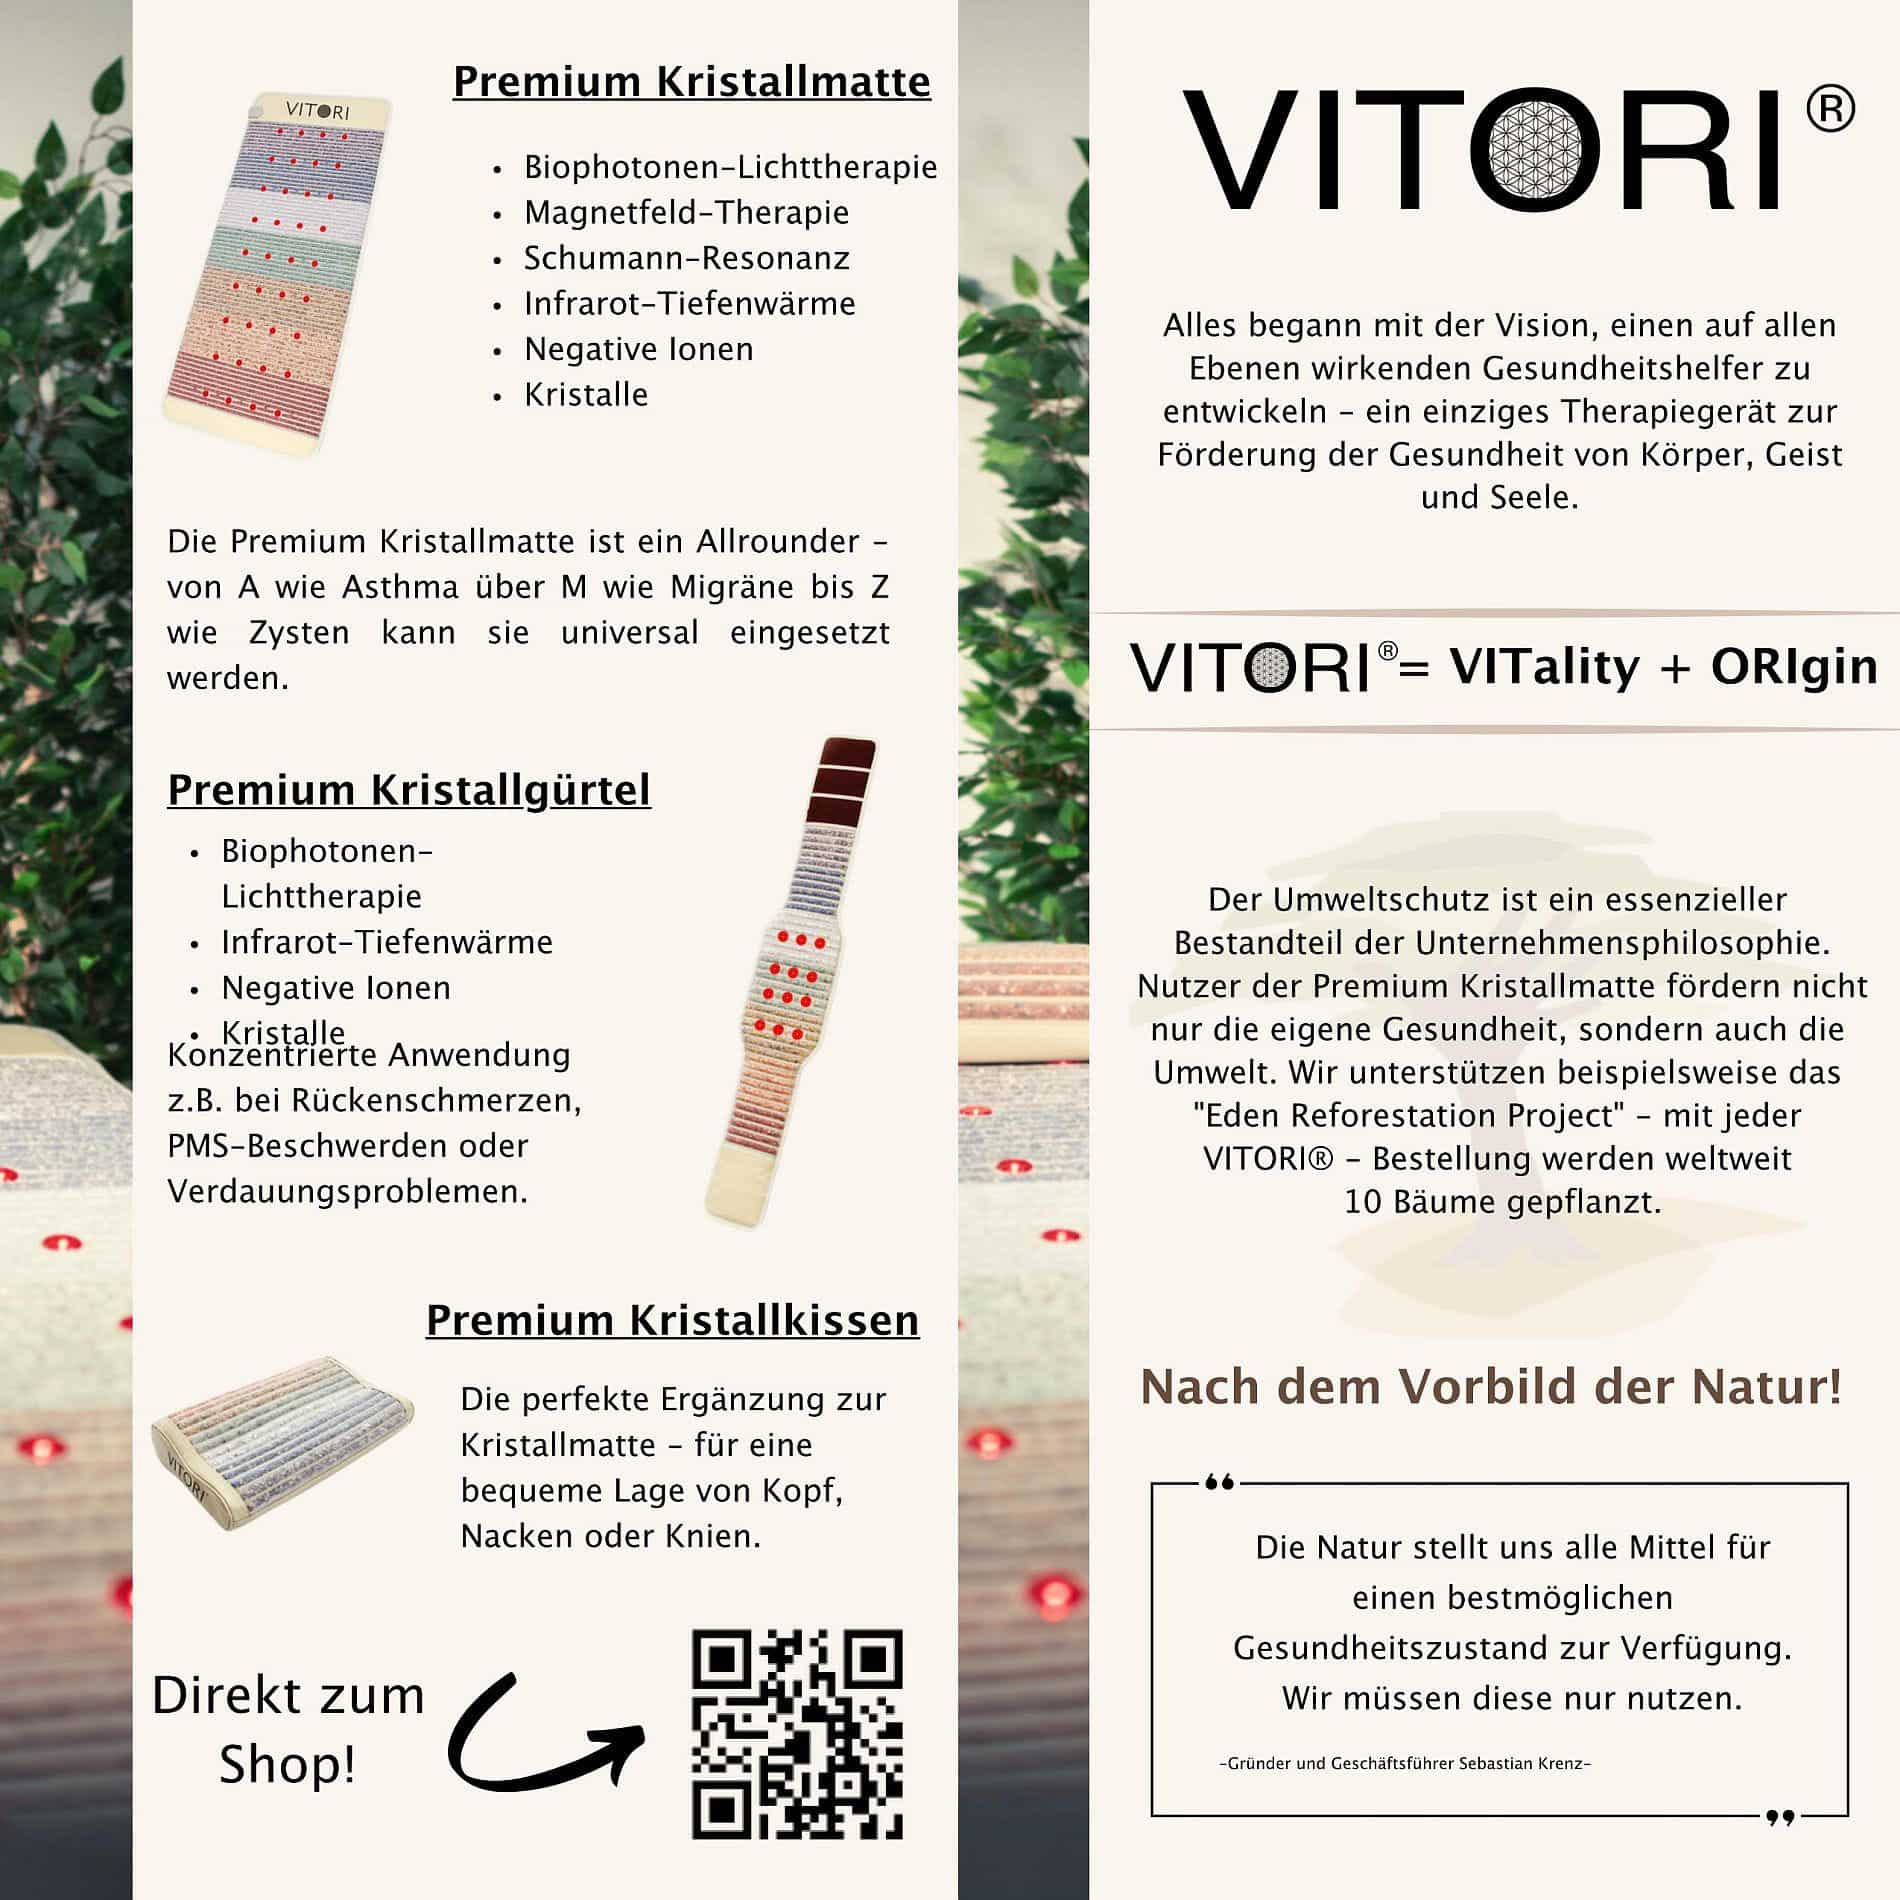 Vitori Kristallmatte Flyer deutsch Seite 1